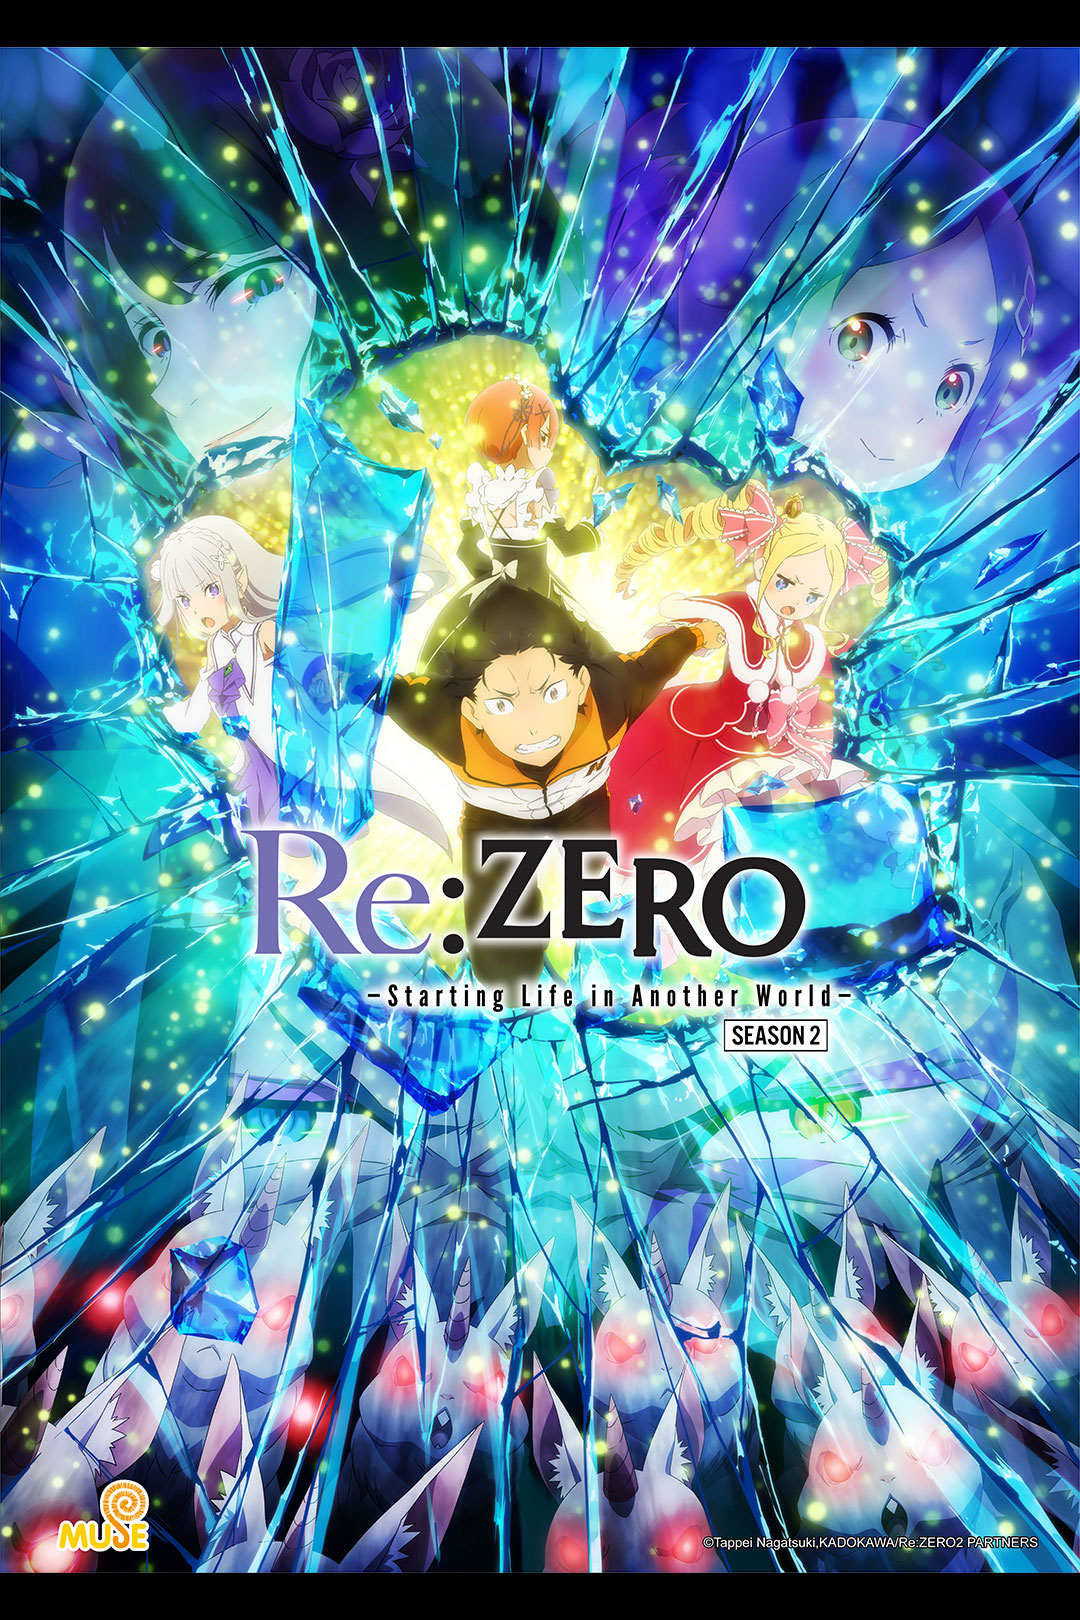 Re:Zero - Bắt đầu lại từ con số 0 tại thế giới khác S2